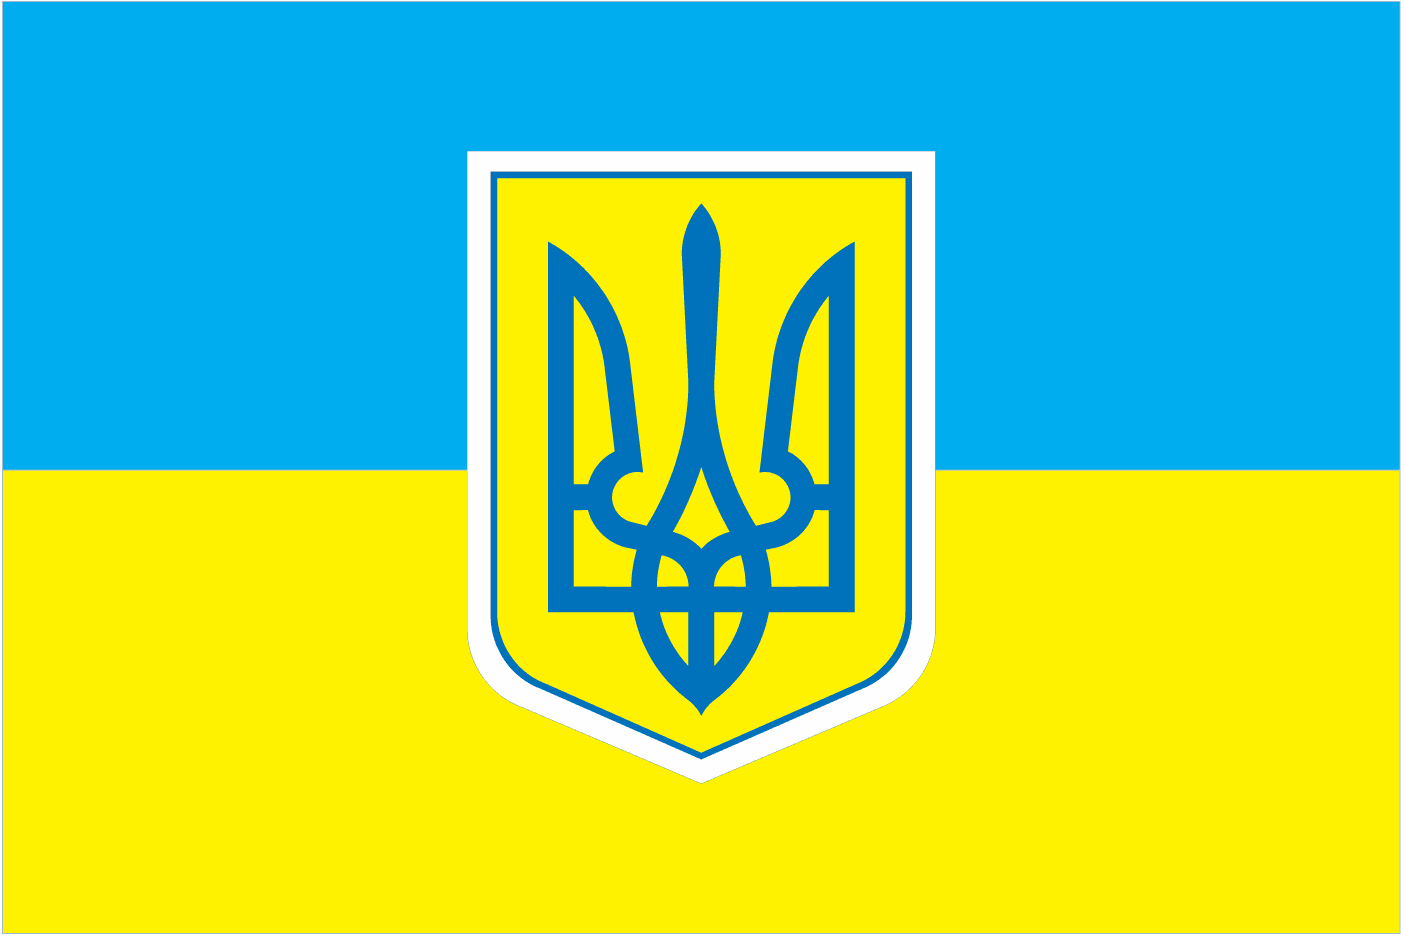 «Лев с прибором», или каким может быть Большой государственный герб Украины